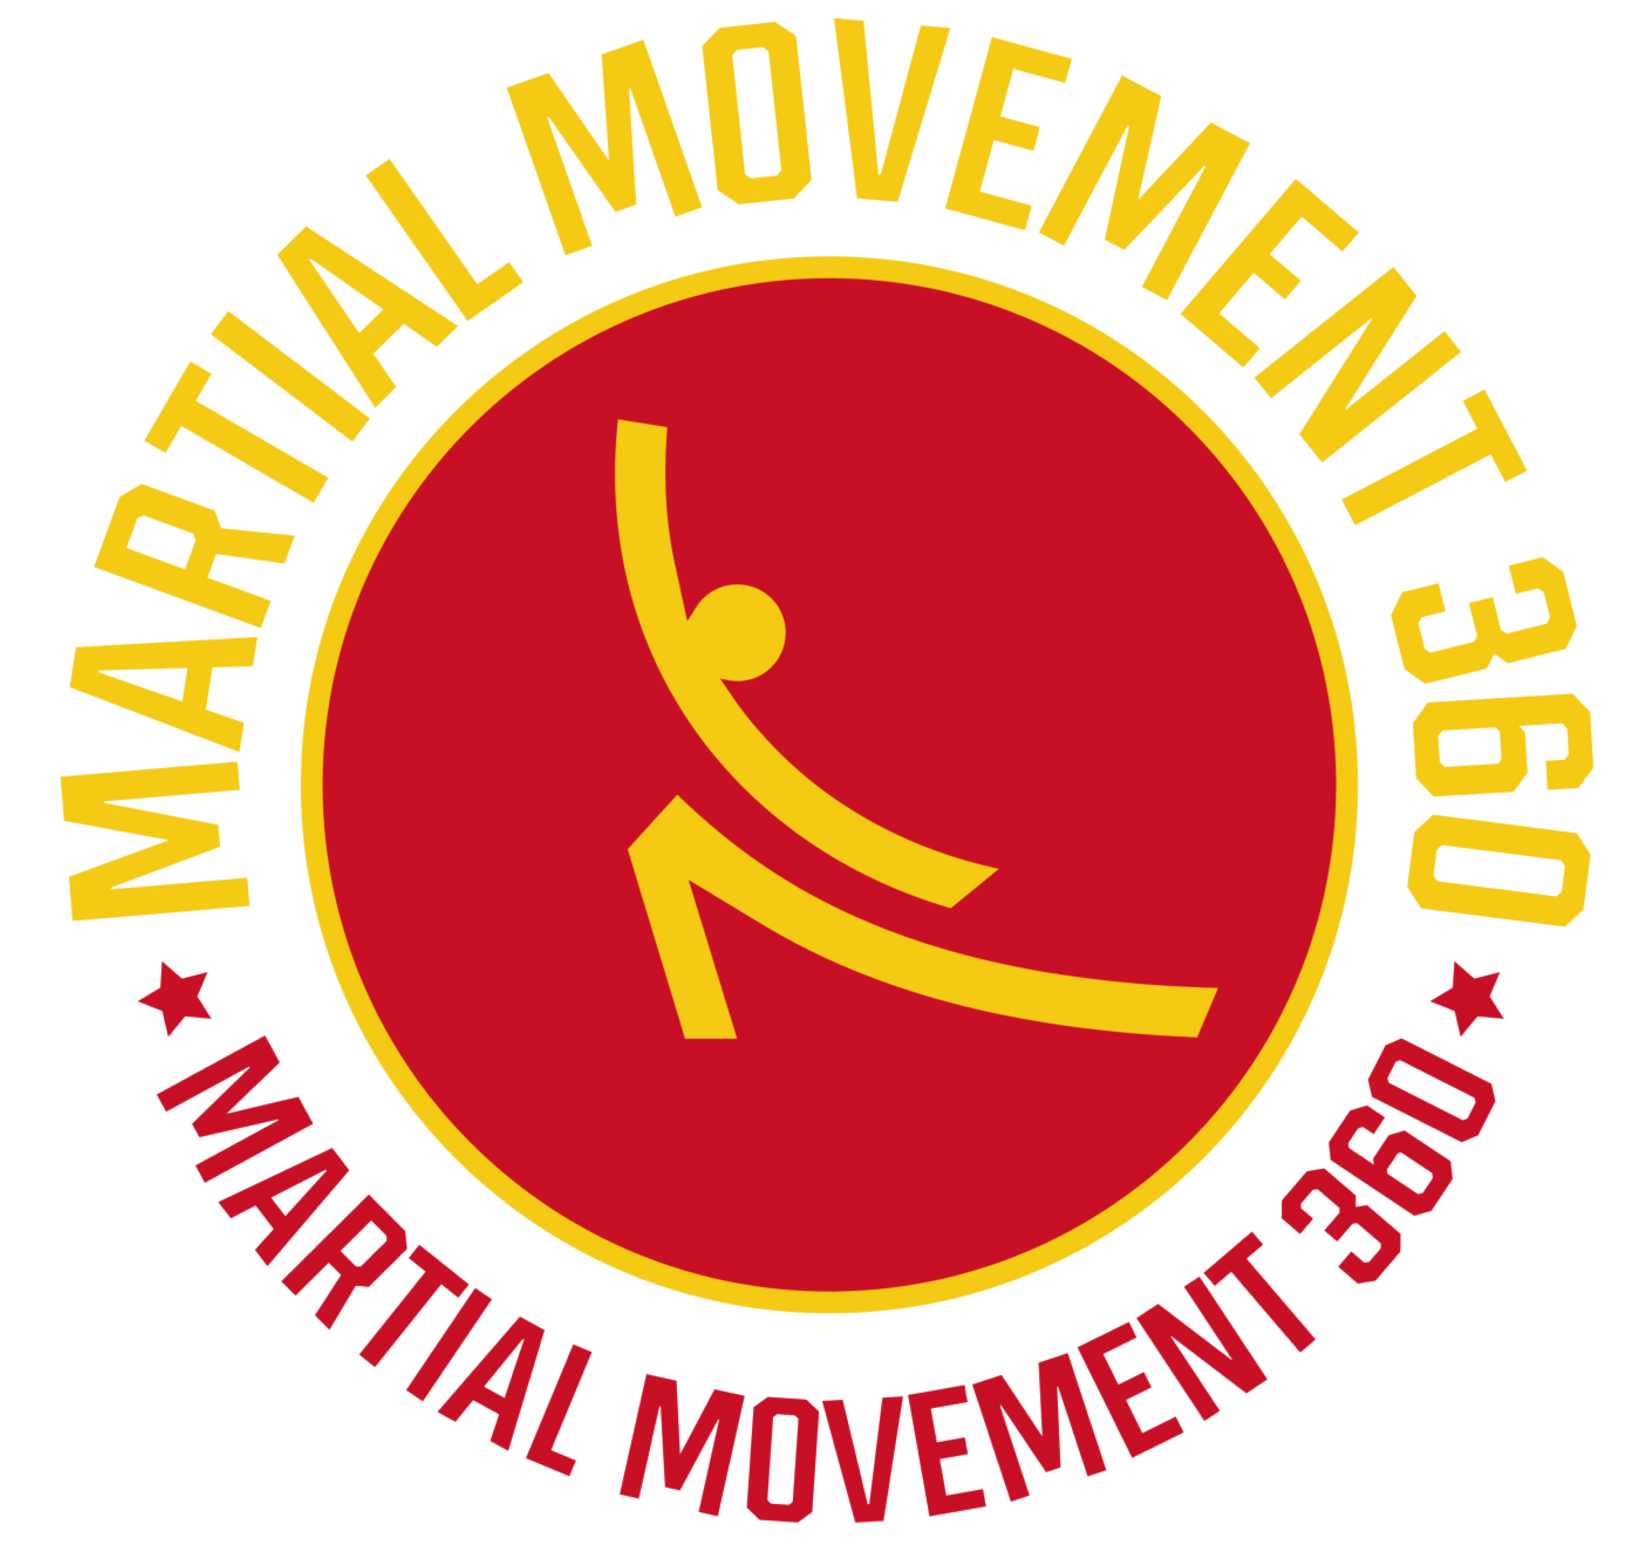 Martial Movement 360 - Martial Arts Classes in JKD/Kali